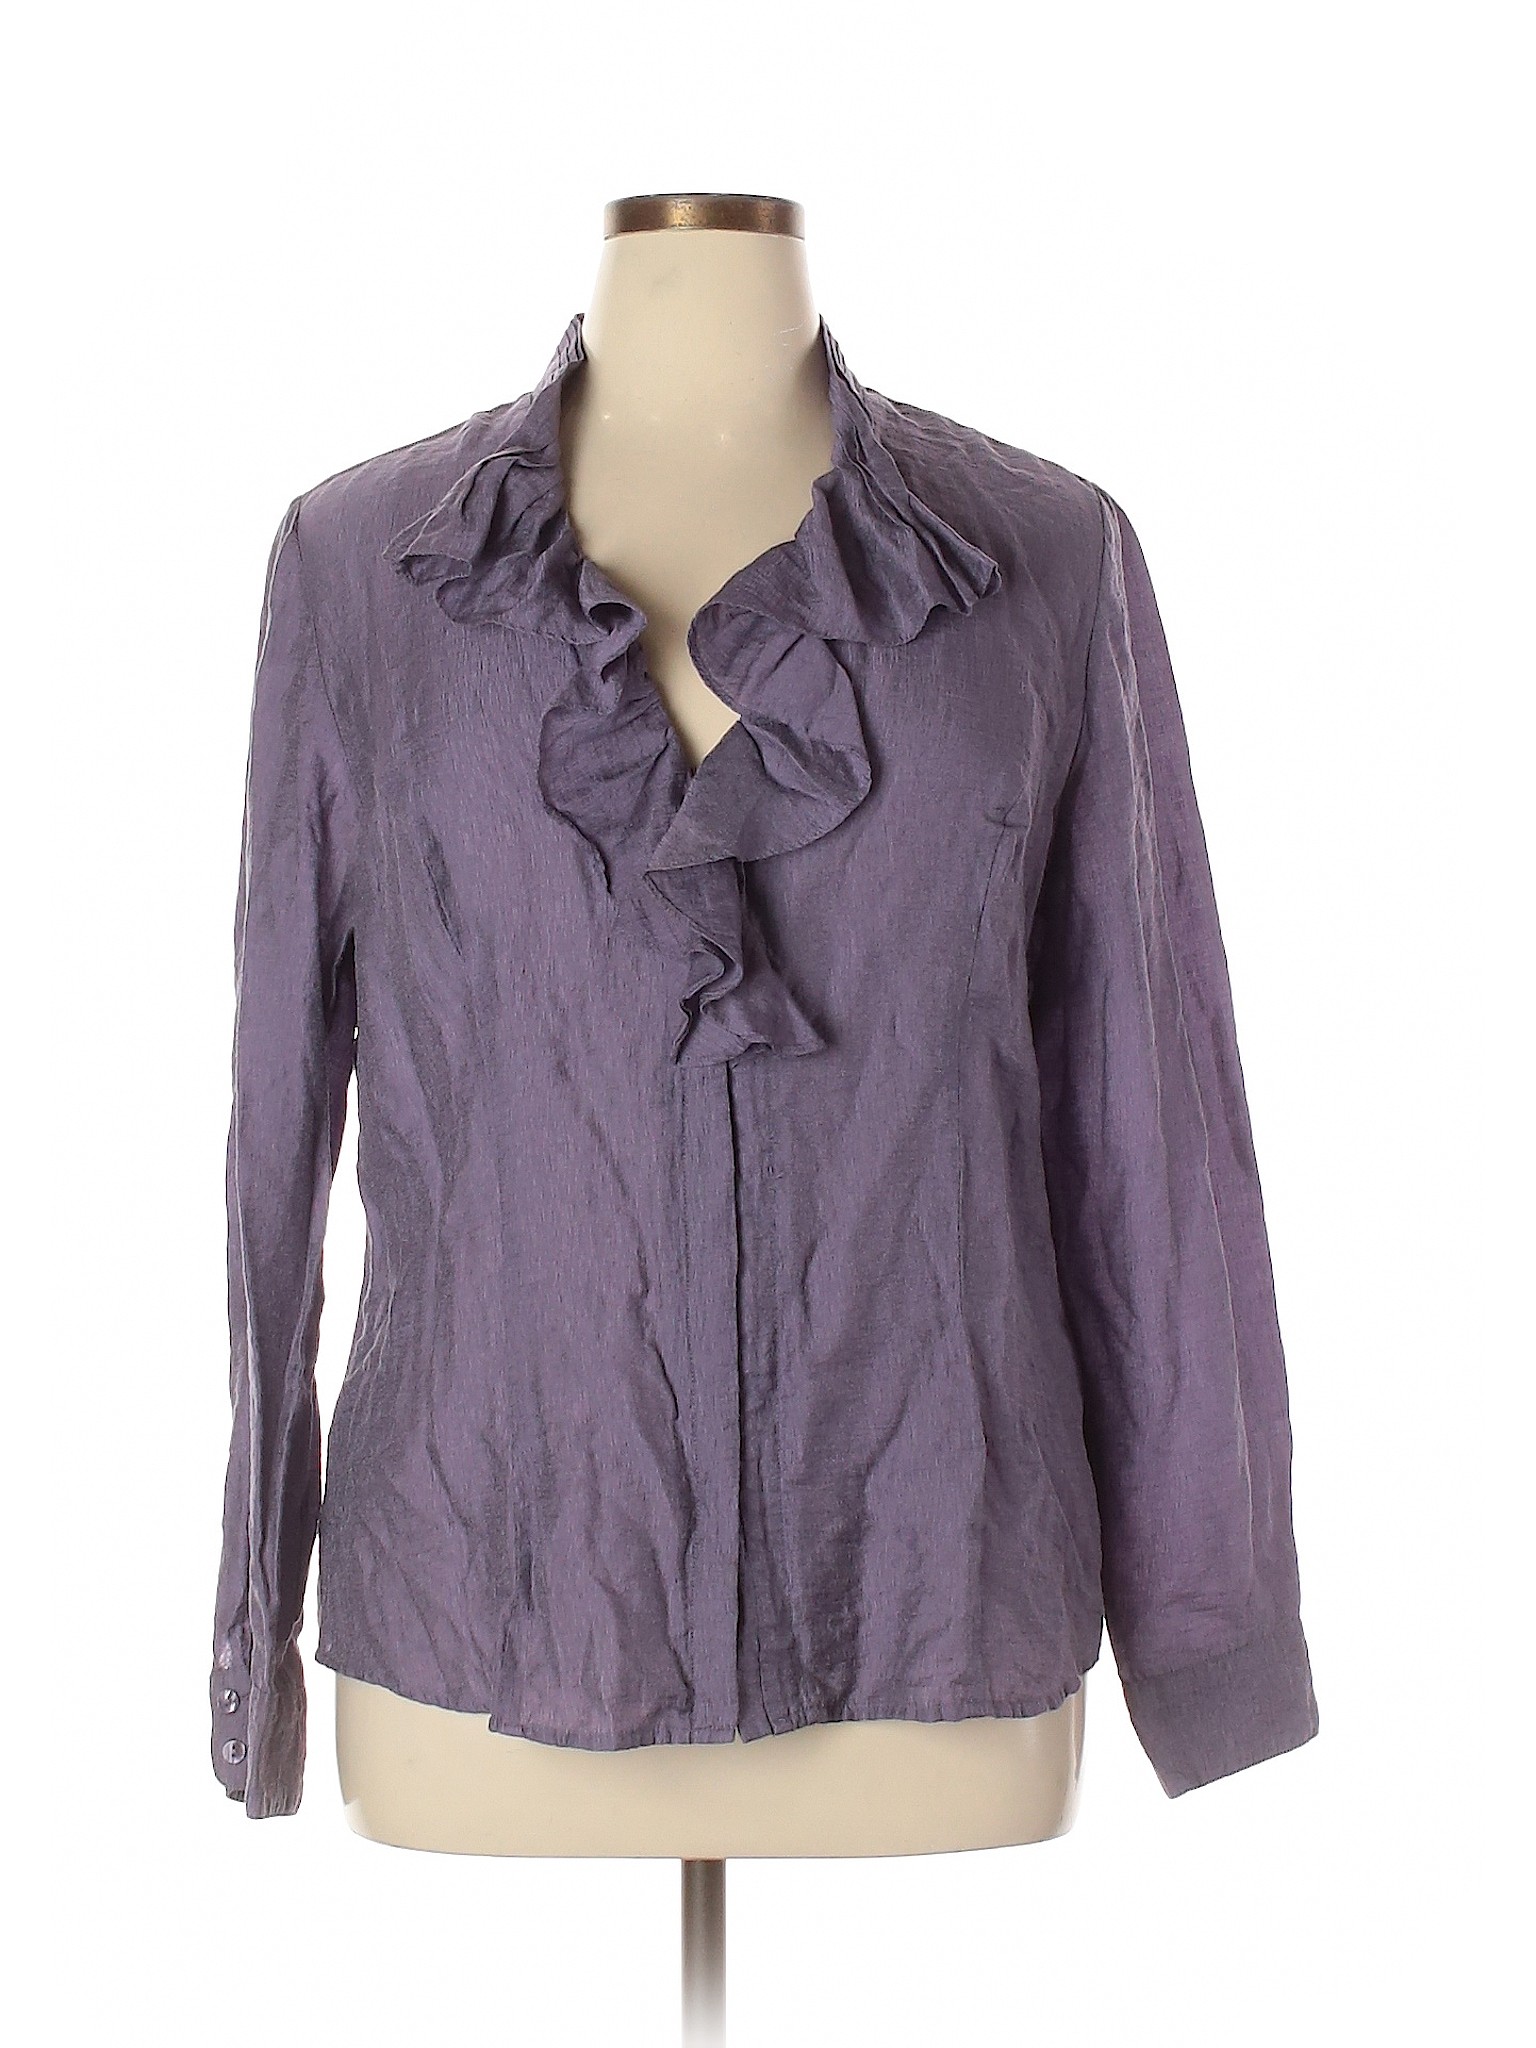 Coldwater Creek Women Purple Long Sleeve Blouse XL | eBay